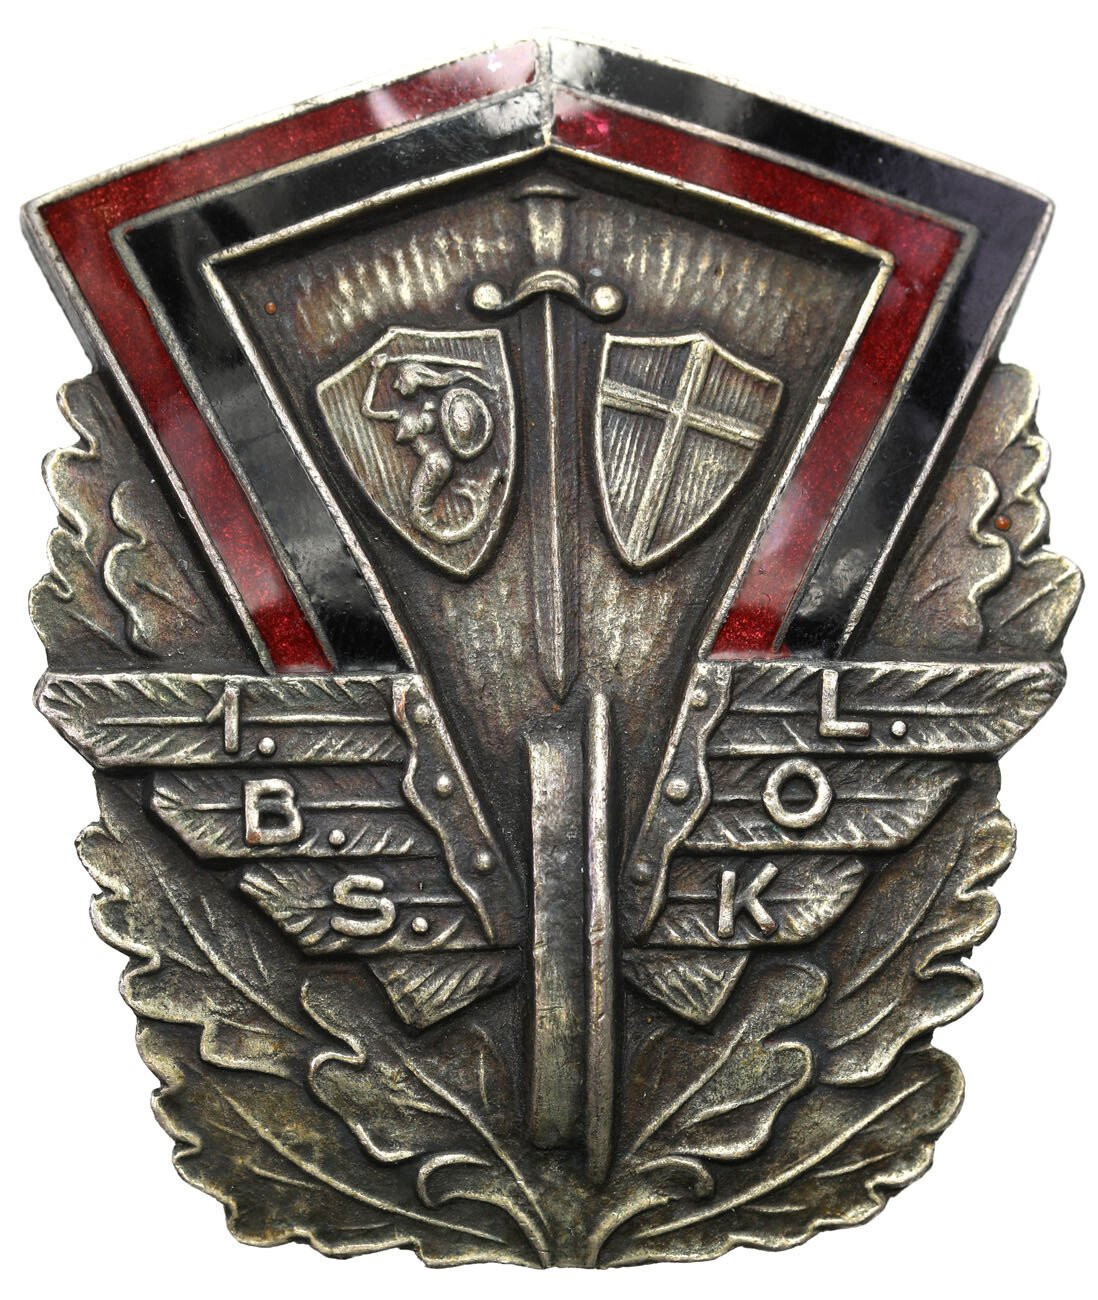 Odznaka. 1 Batalionu Saperów Kolejowych 2 korpusu 